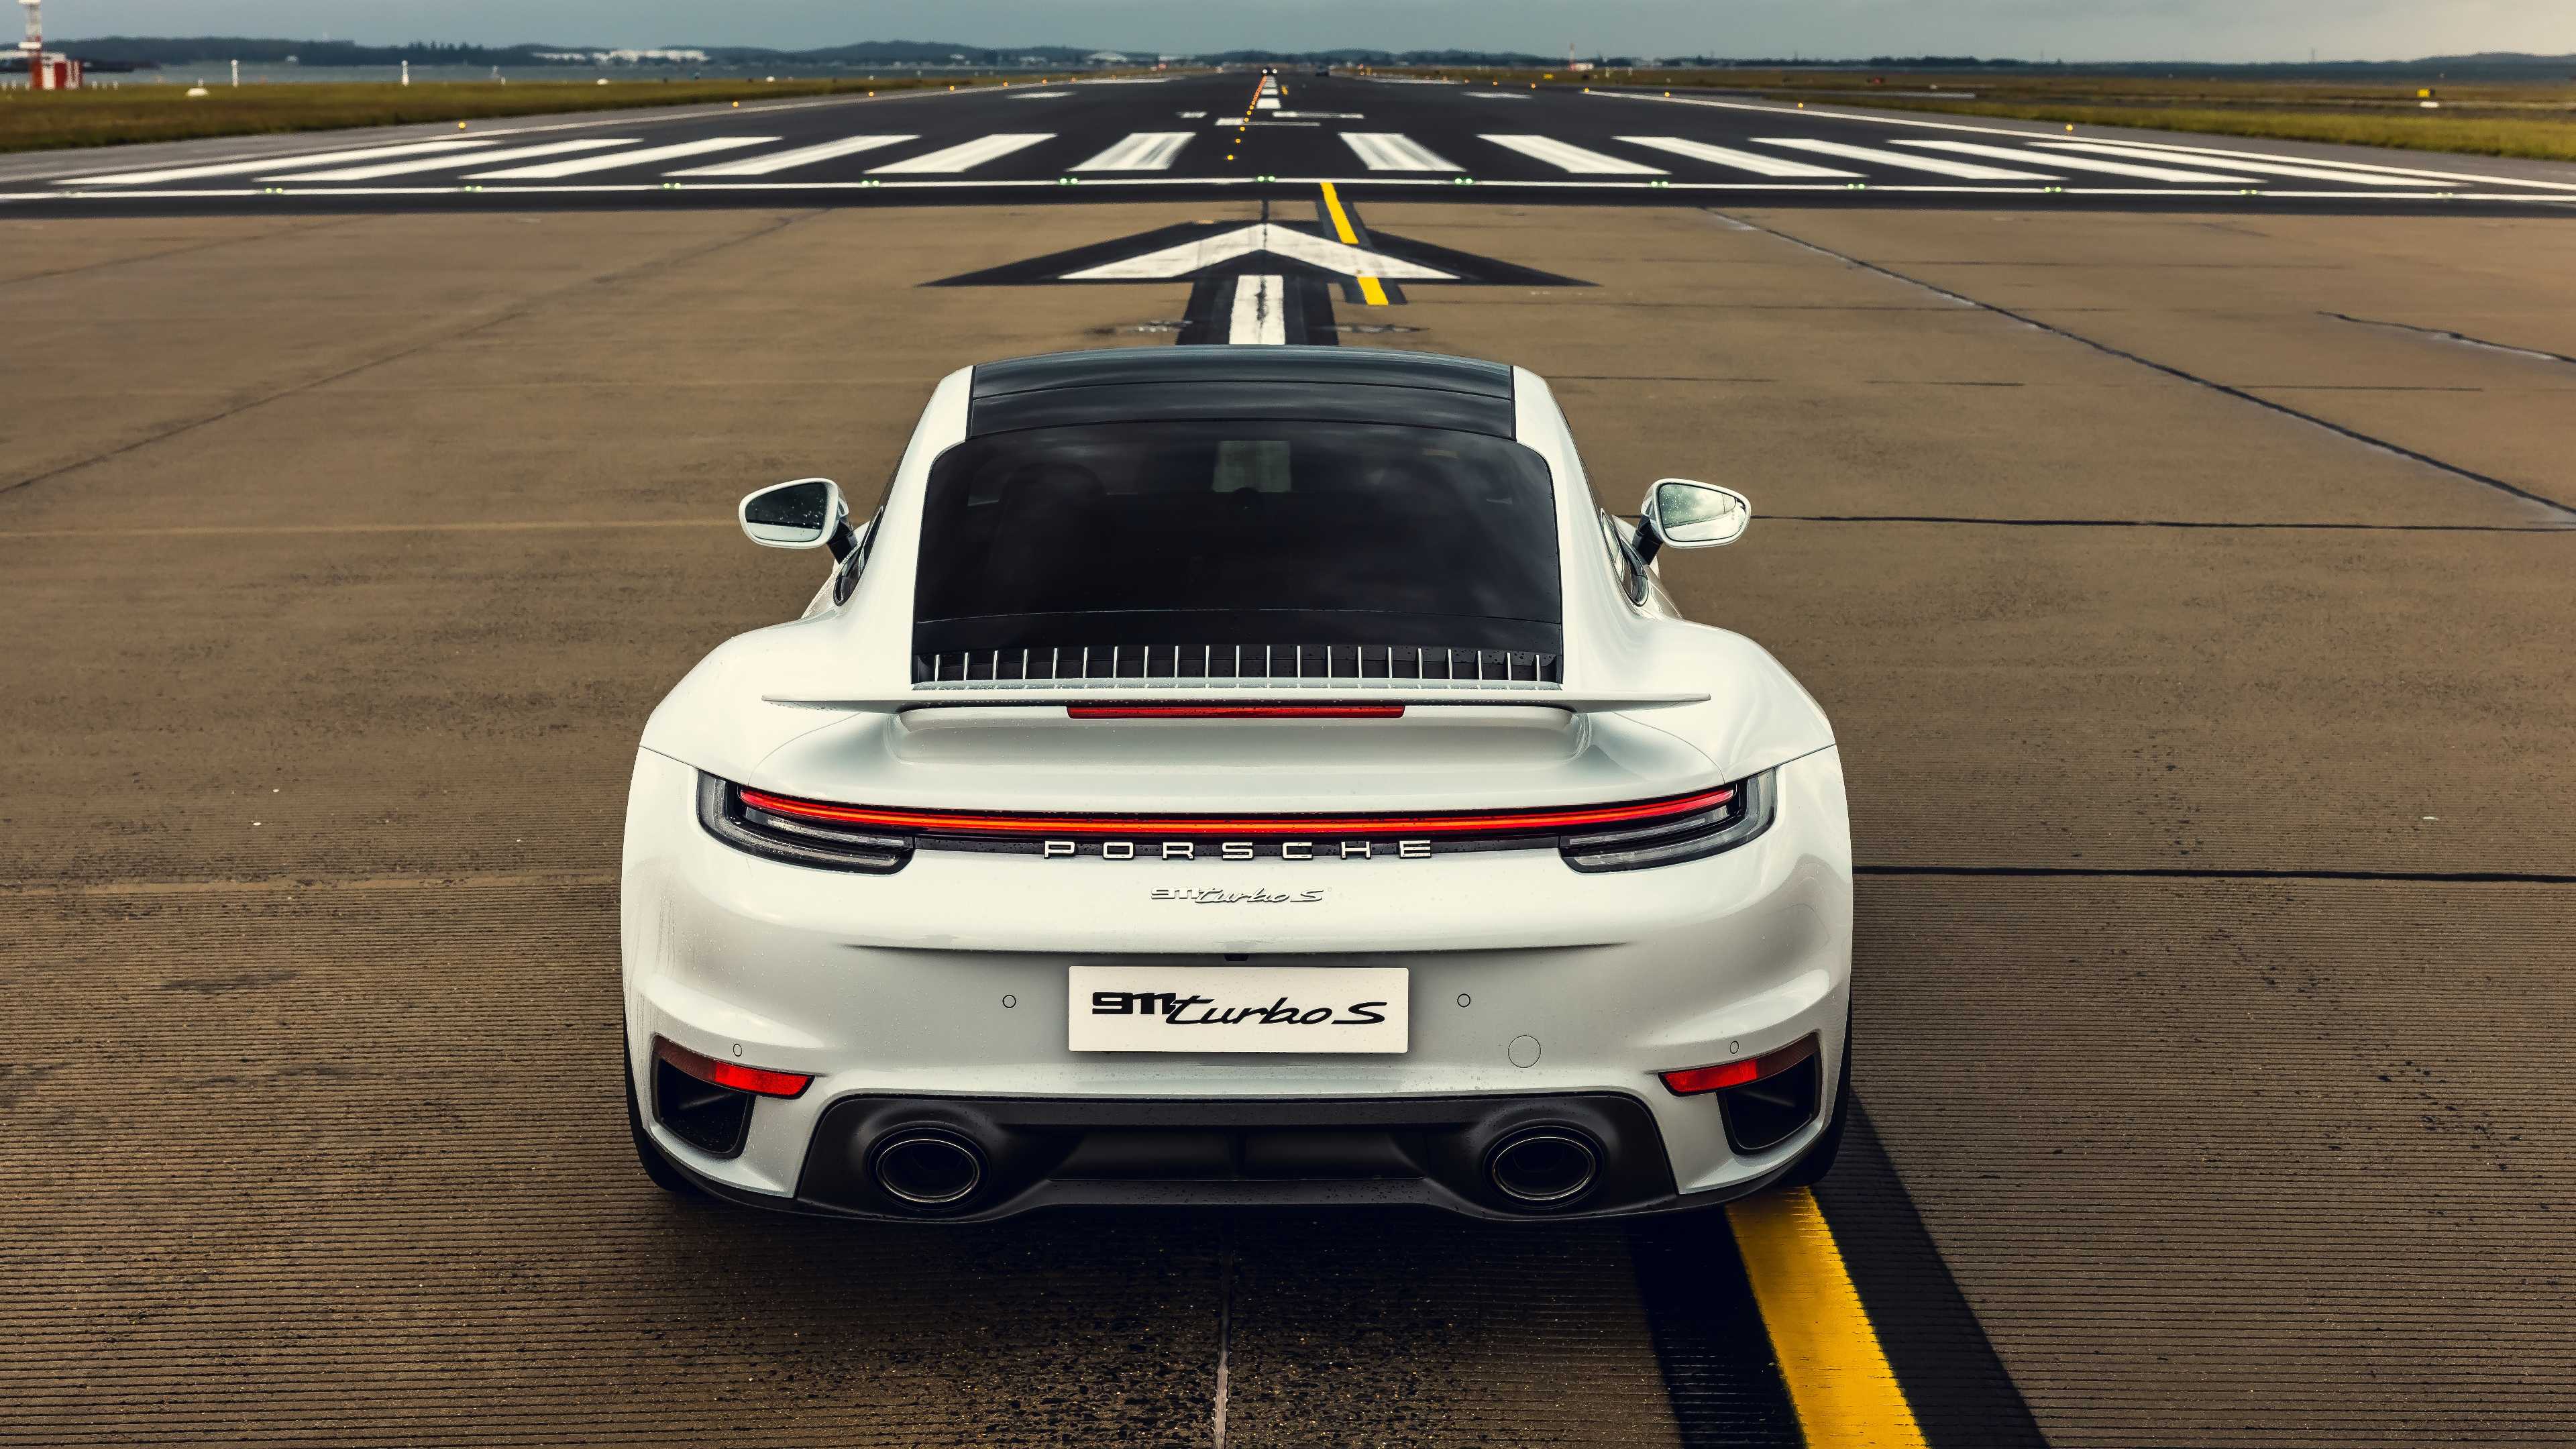 Porsche 911 turbo s (exclusive series) | real racing 3 wiki | fandom